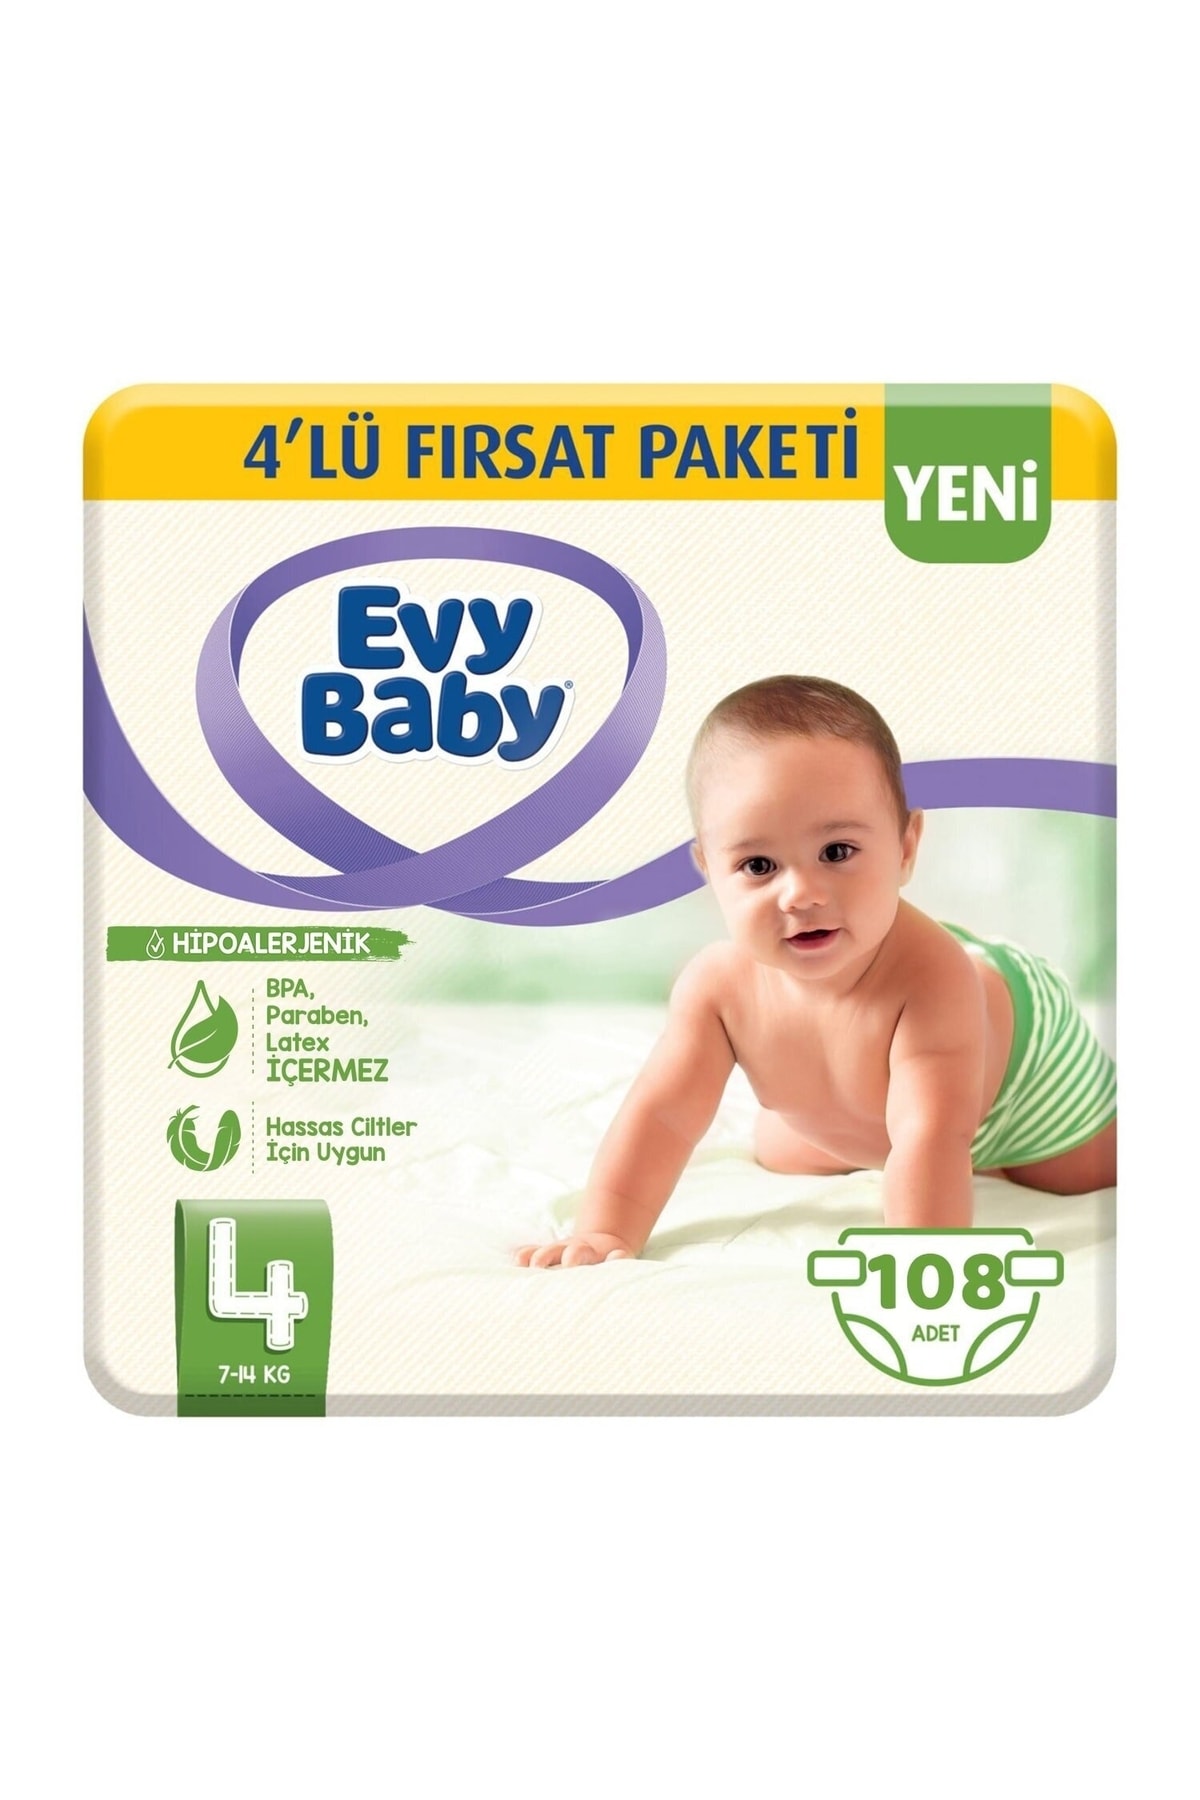 Evy Baby Bebek Bezi 4 Beden Maxi 4'lü Fırsat Paketi 108 Adet (YENİ)